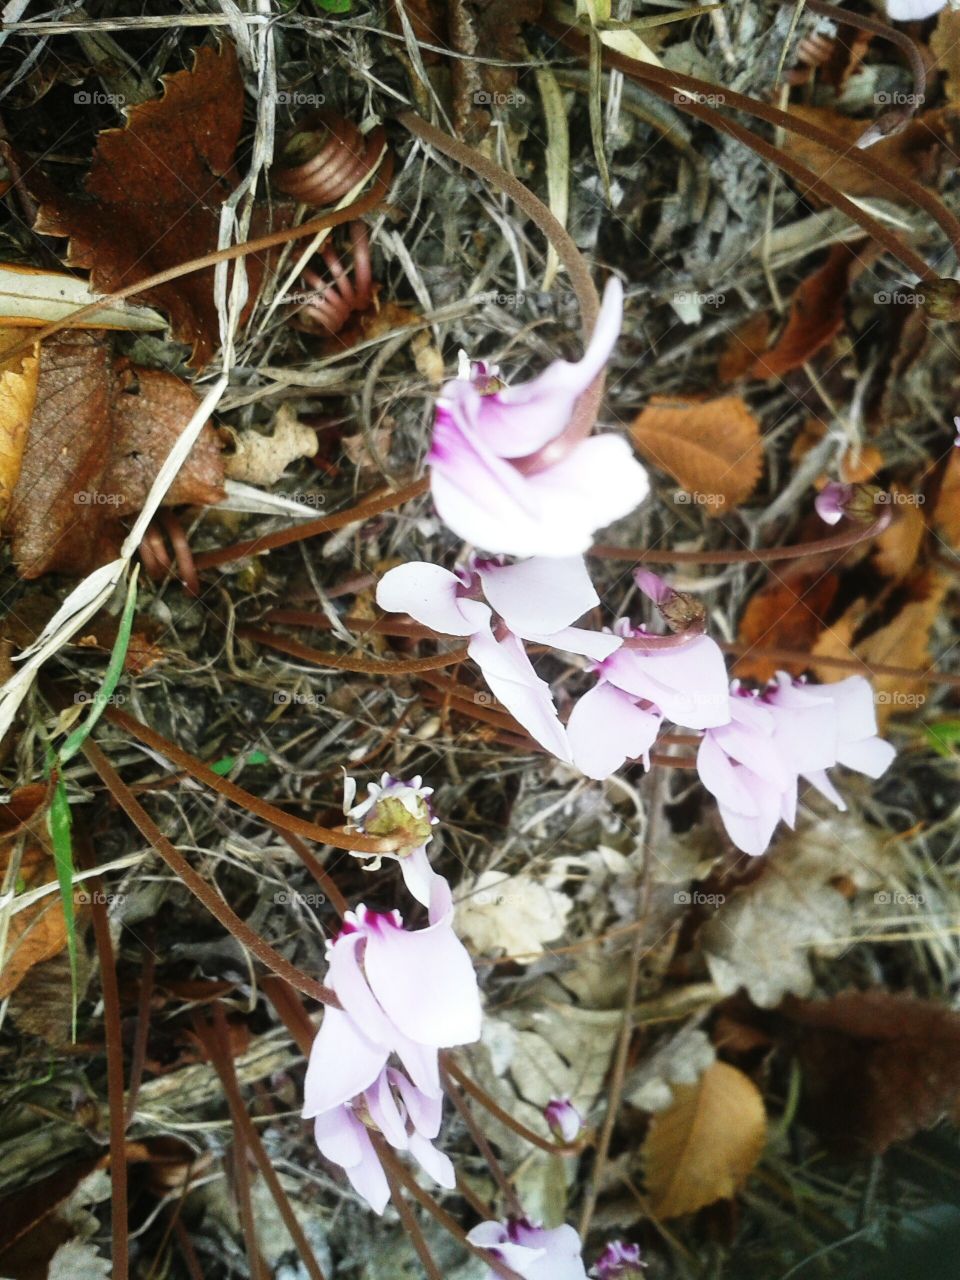 Wood violets